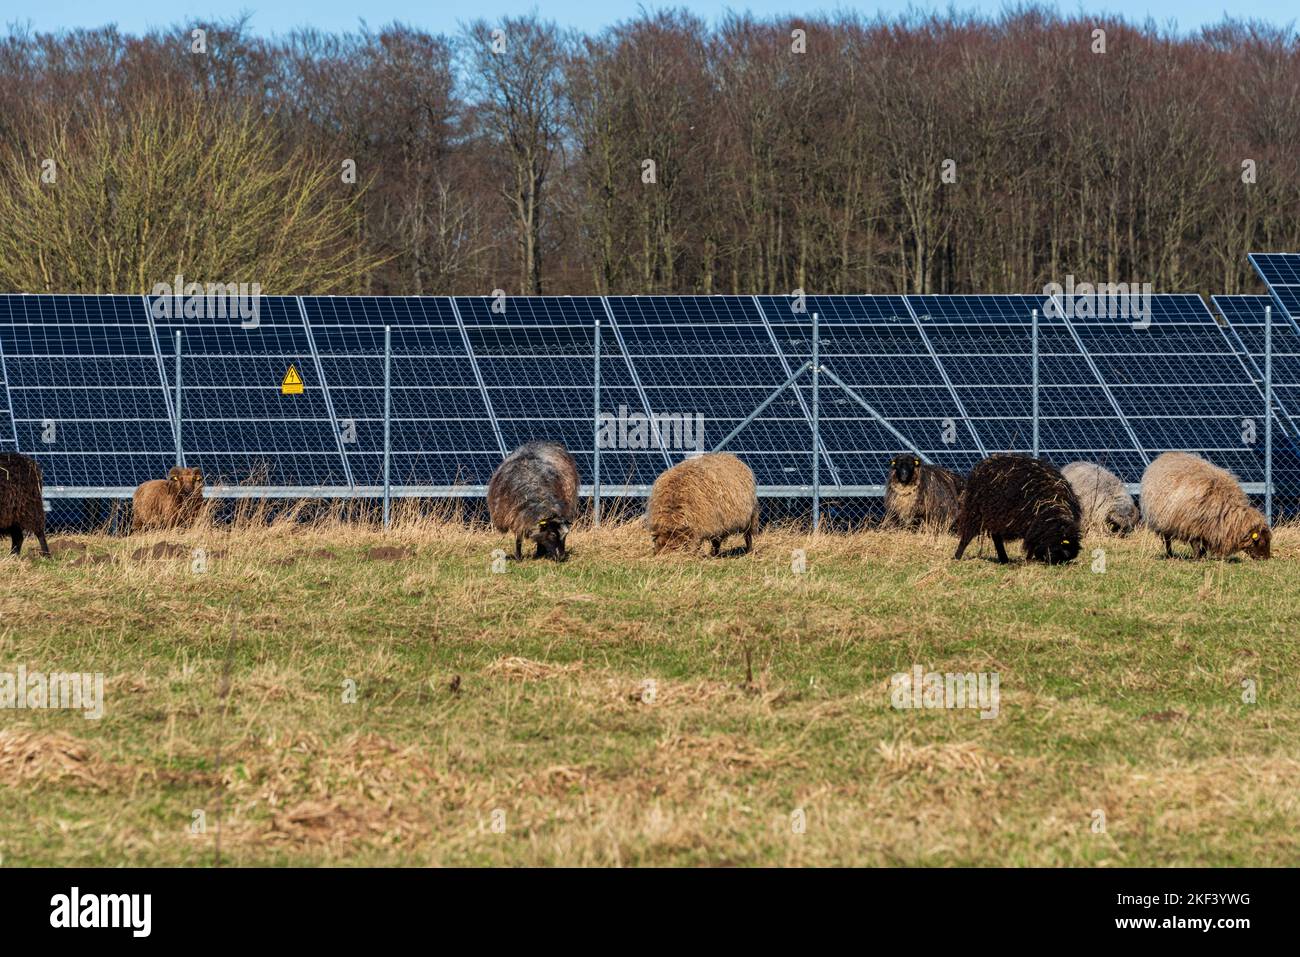 Photovoltaikanlage zur Stromerzeugung am Rande einer Autobahn, Schafe auf einer Wiese Stock Photo